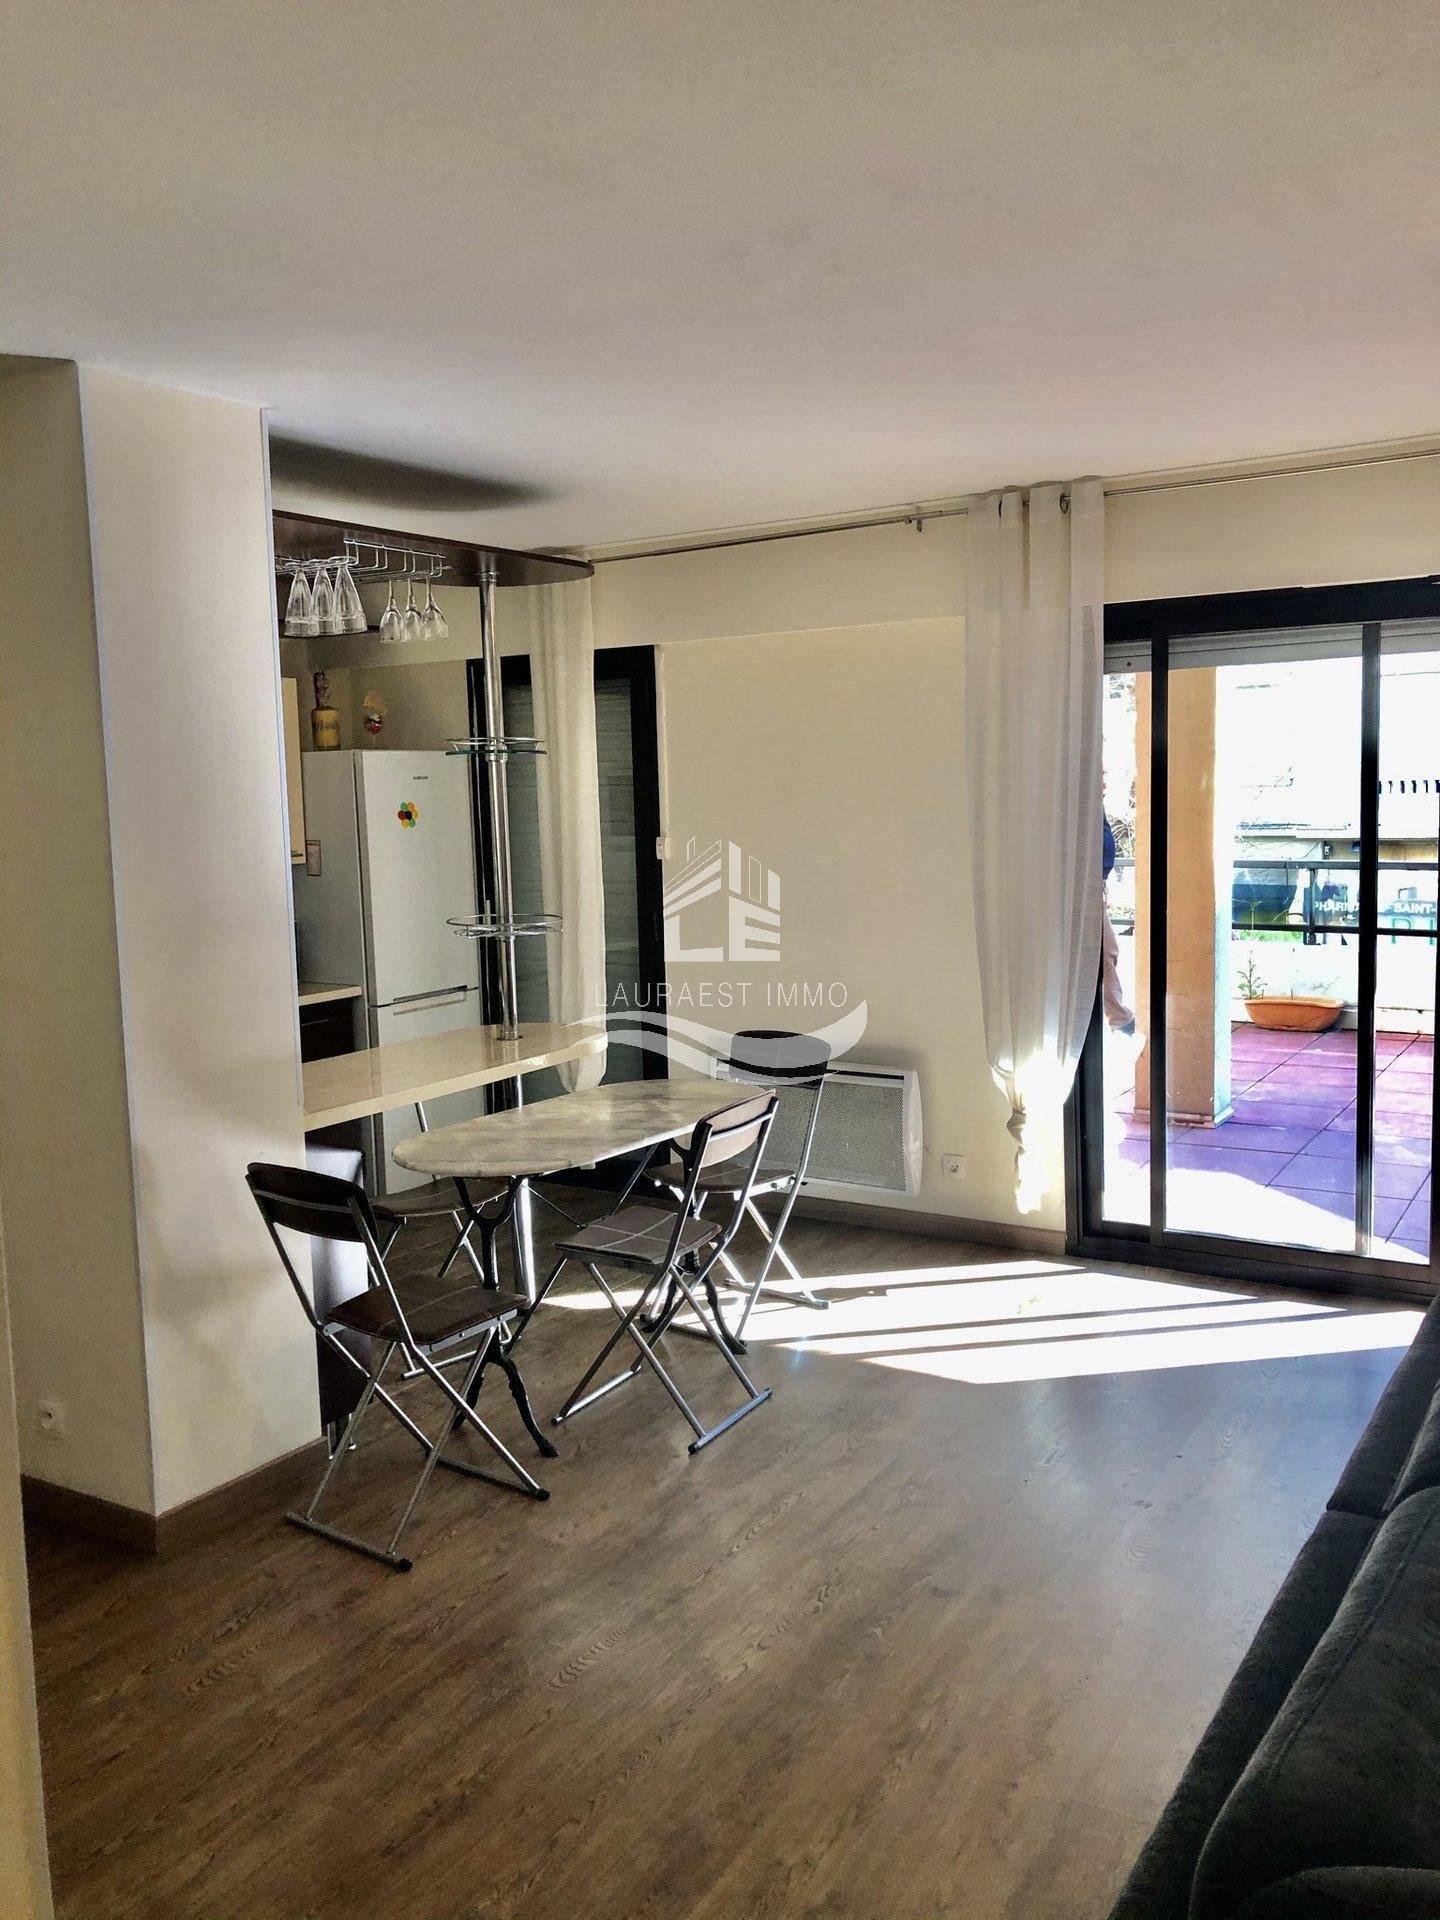 Vente Appartement 70m² 3 Pièces à Nice (06200) - Lauraest - Immo